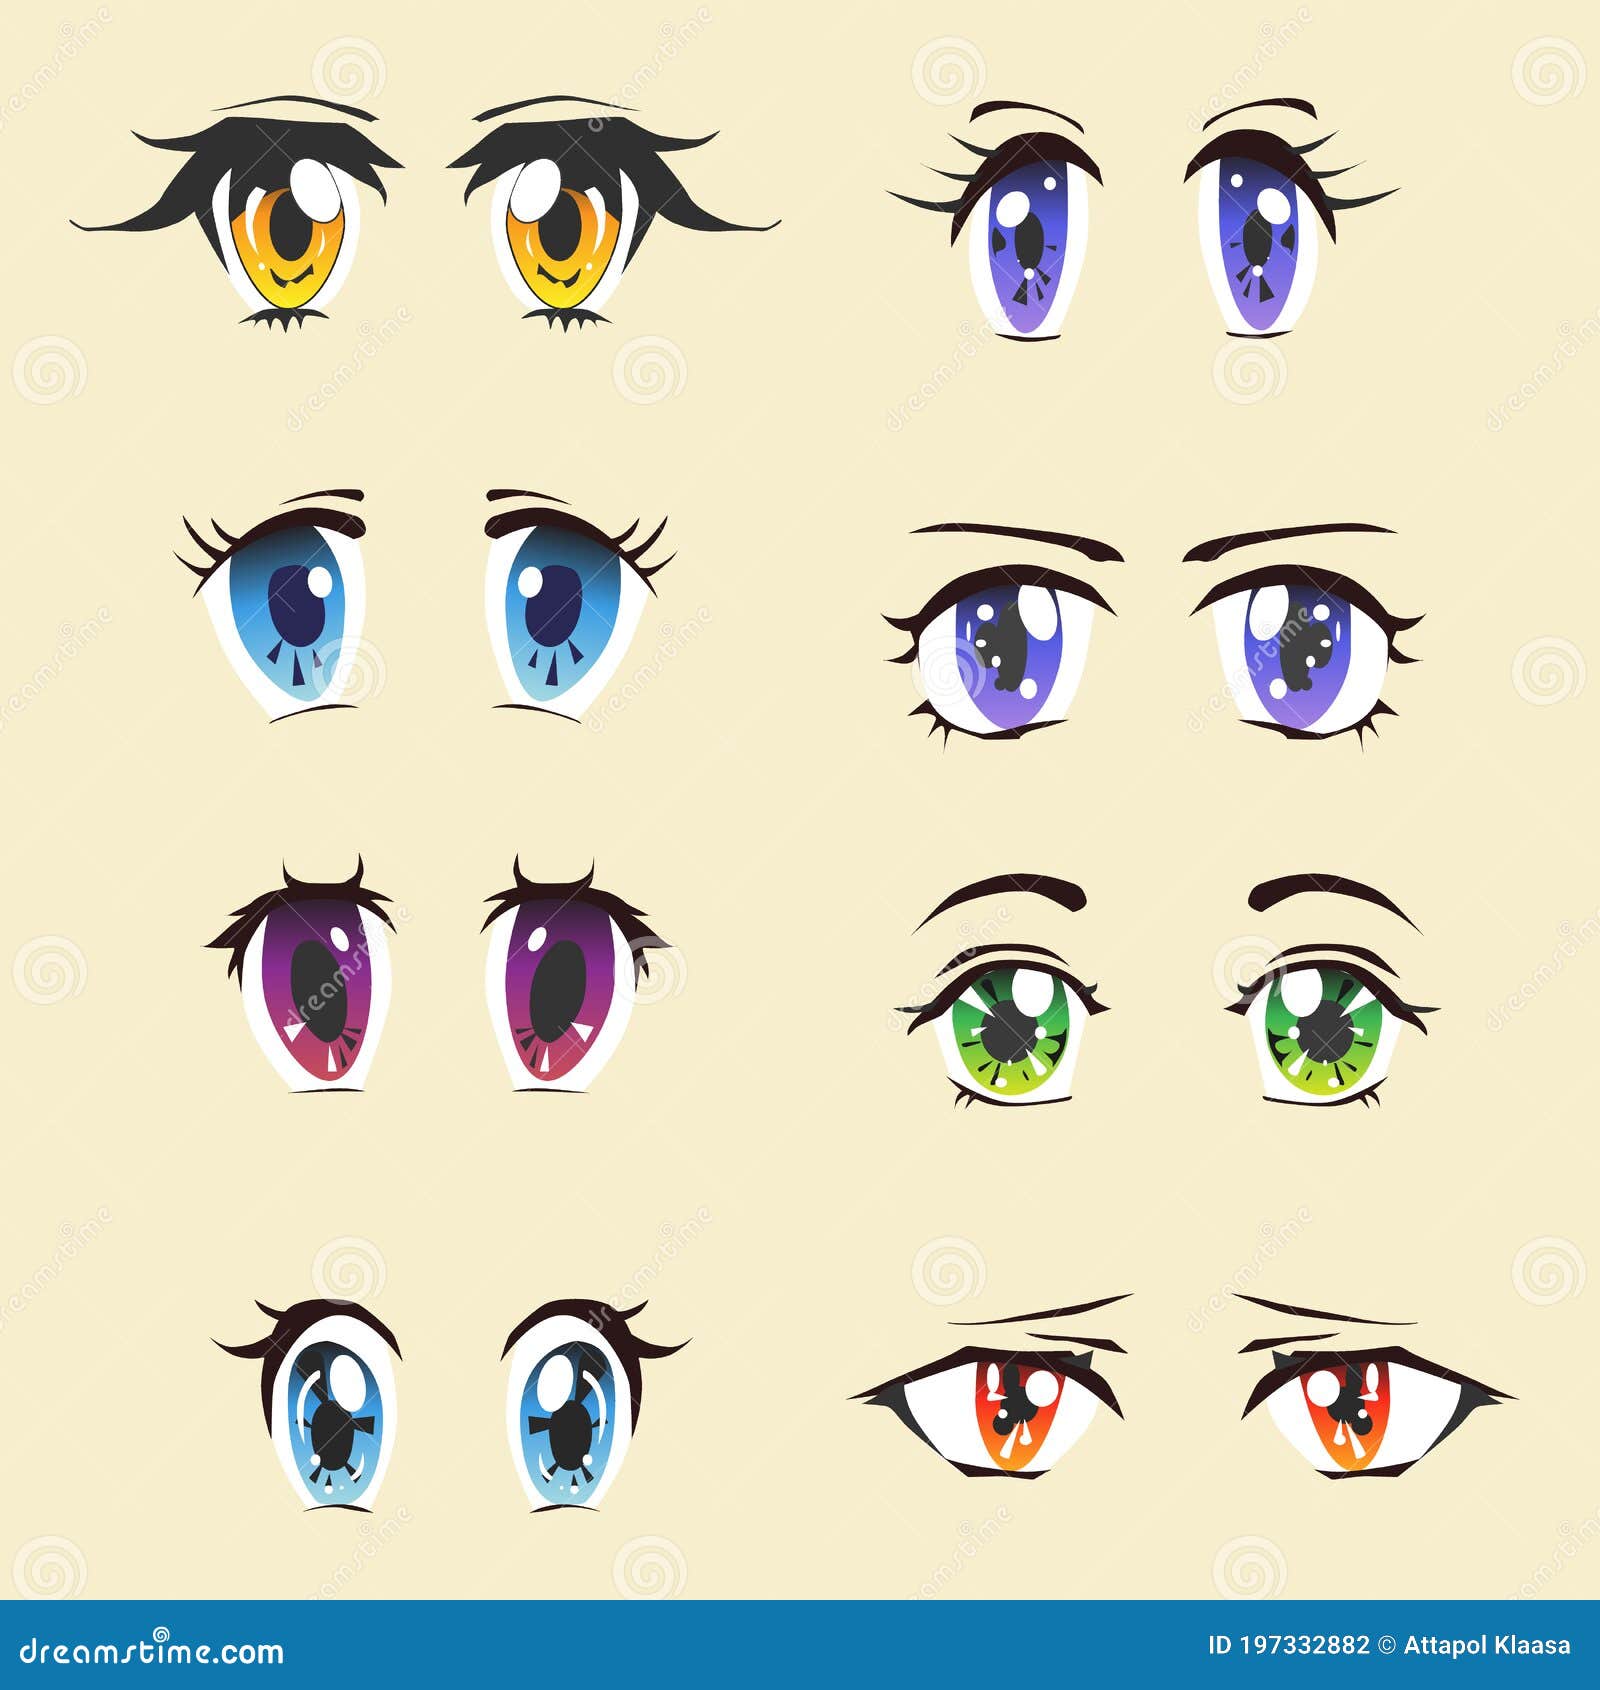 Como Desenhar Olhos Femininos de Animes e Mangá – Eu Geek